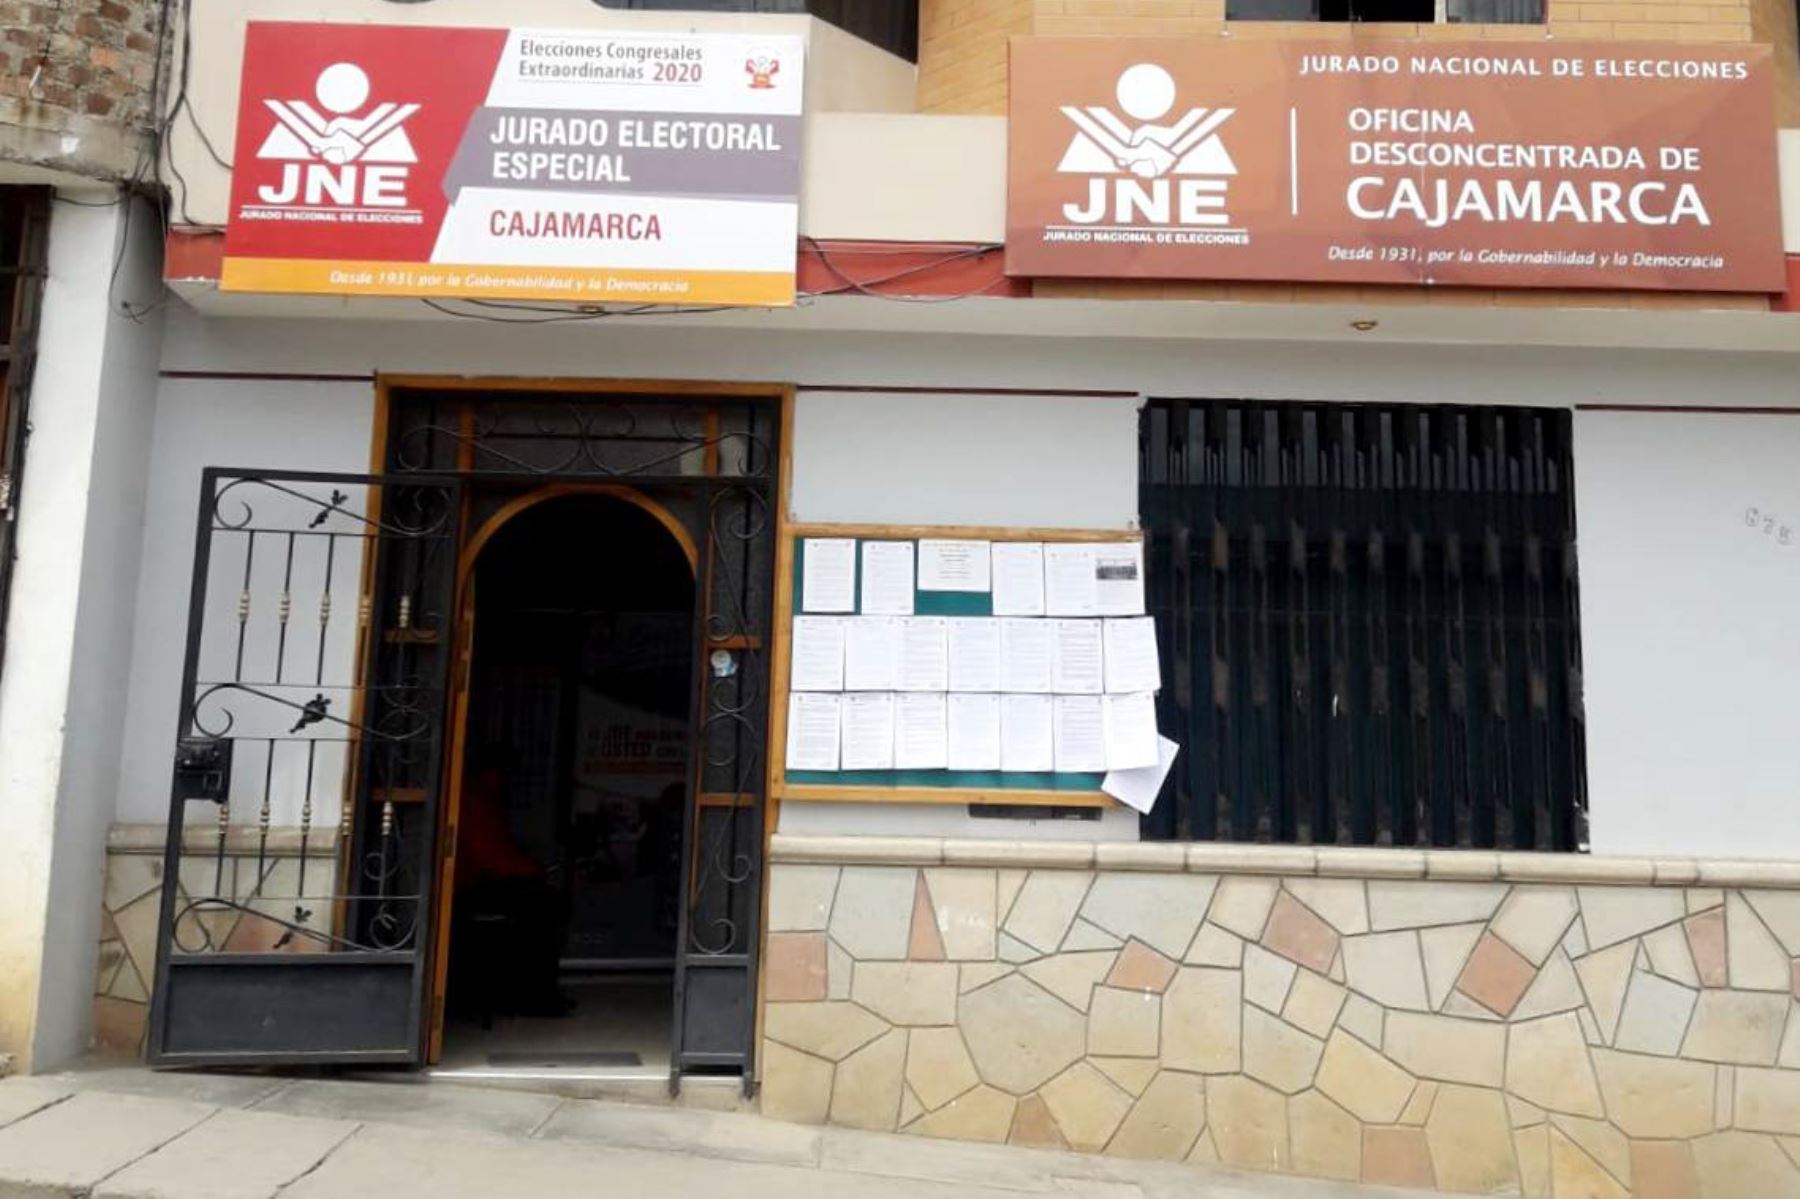 El JEE de Cajamarca recibió 22 listas de partidos y movimientos políticos que participarán en las elecciones congresales del 2020.